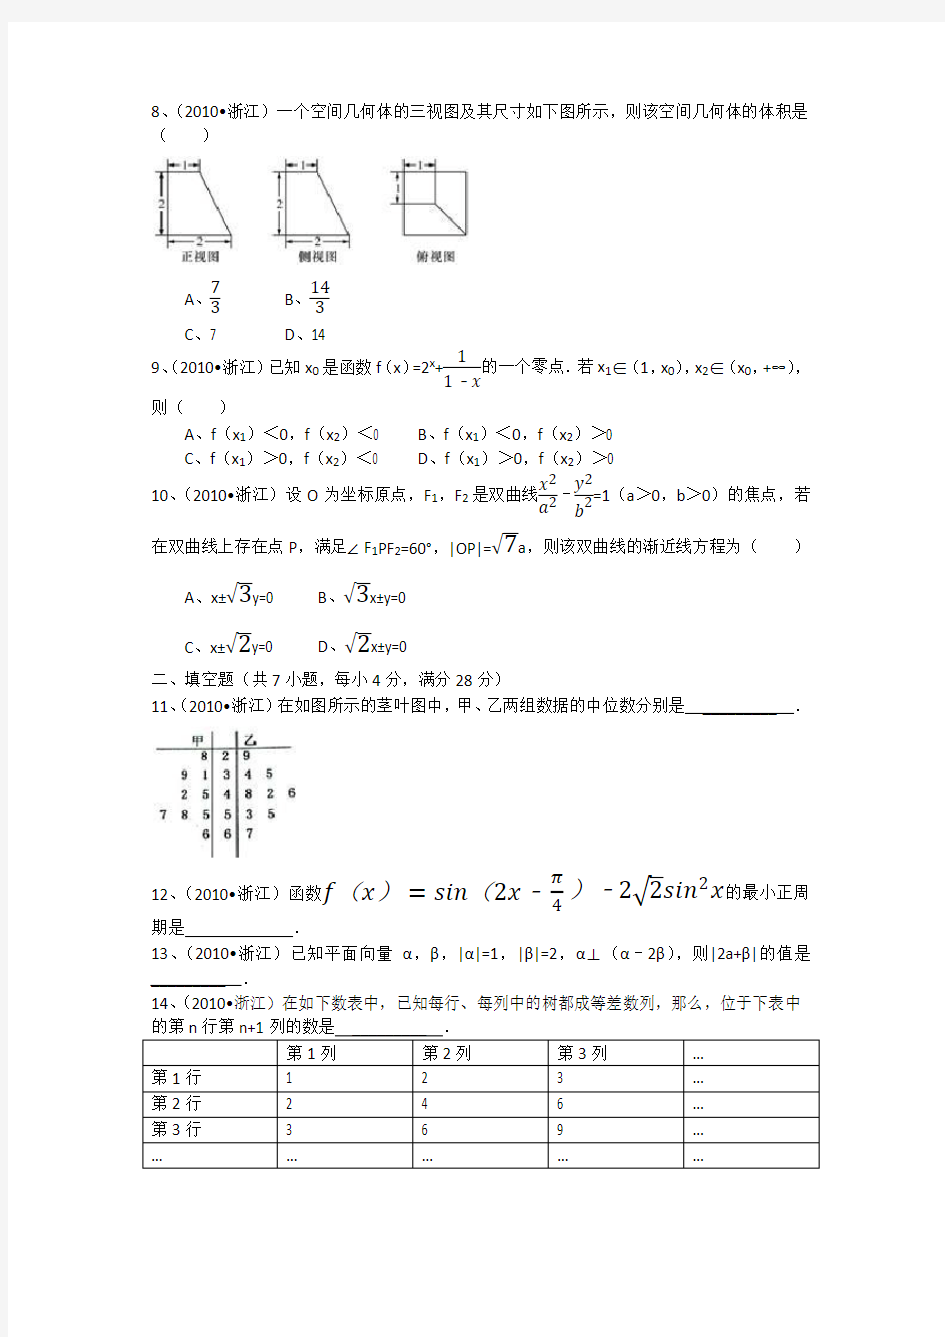 2010年浙江省高考数学试卷(文科)